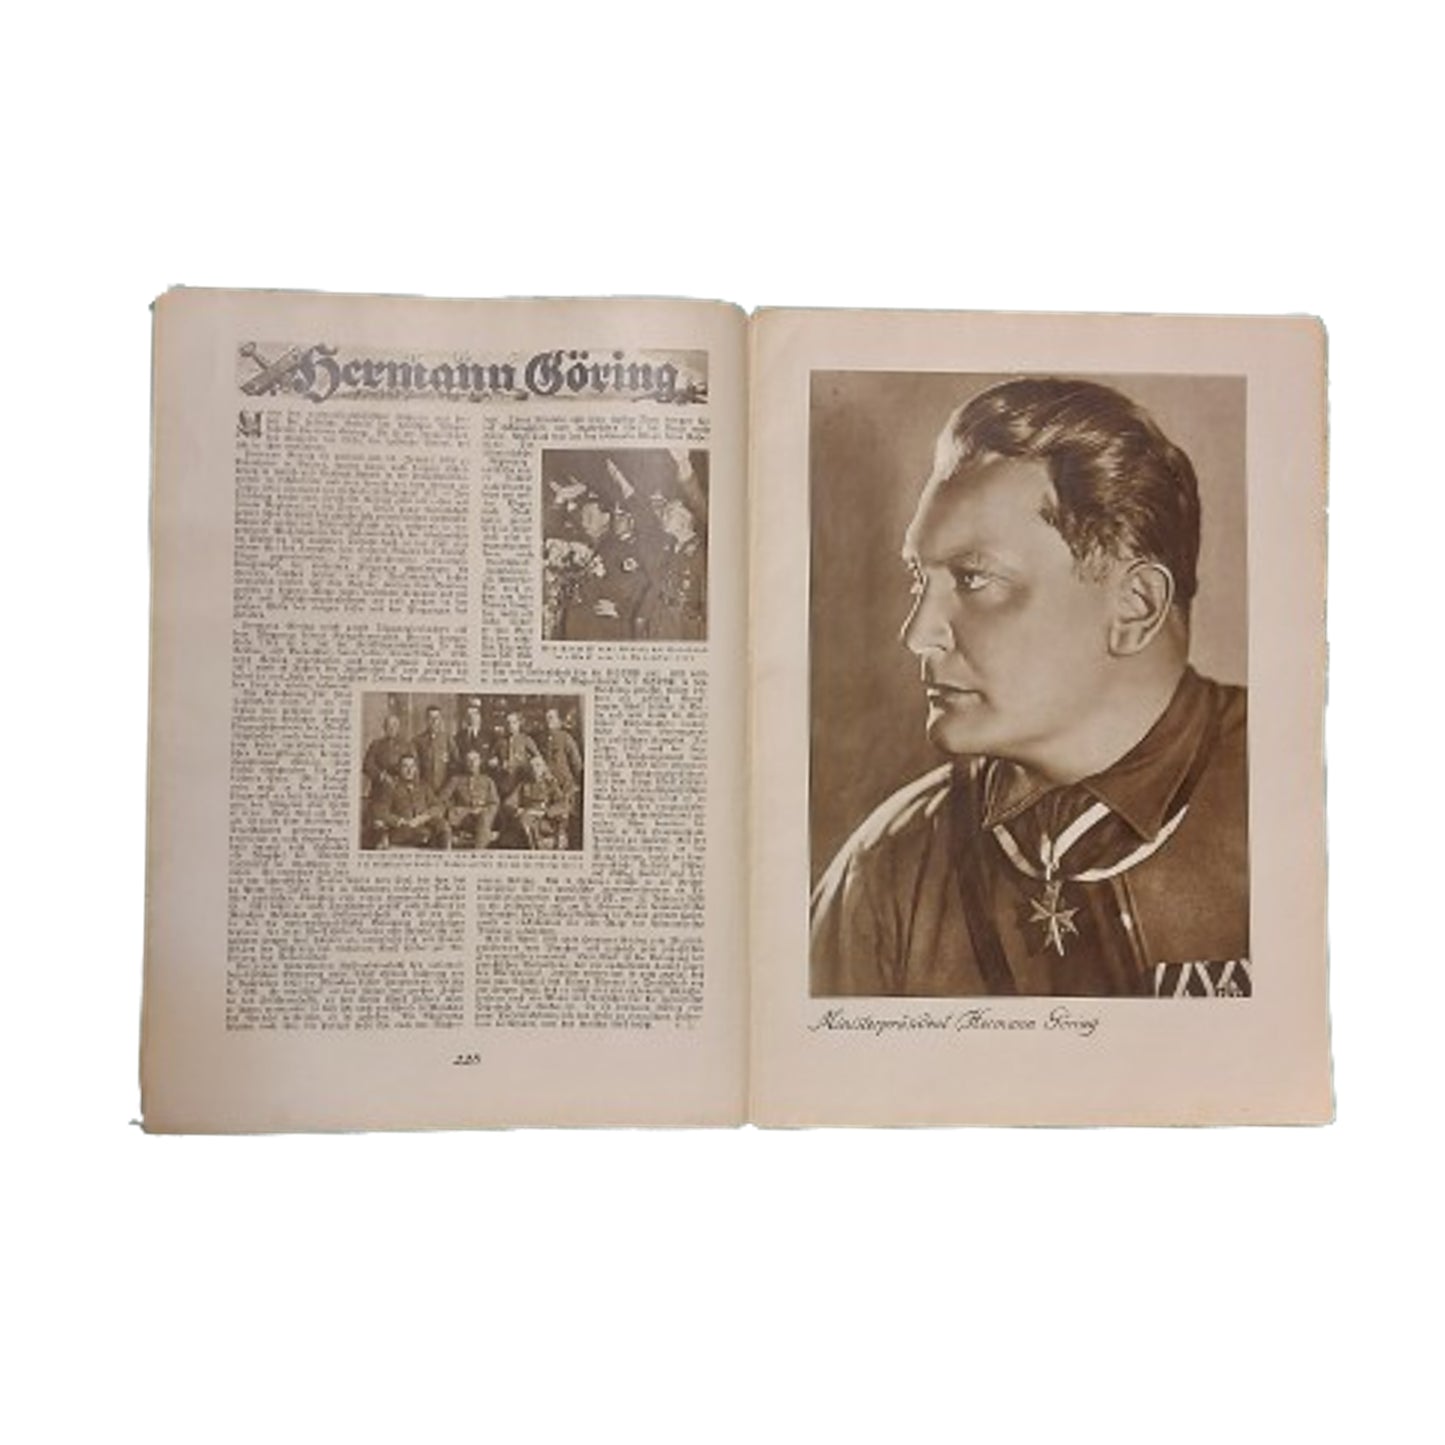 WW2 German Hilf Mit Magazine Issue #8 1934